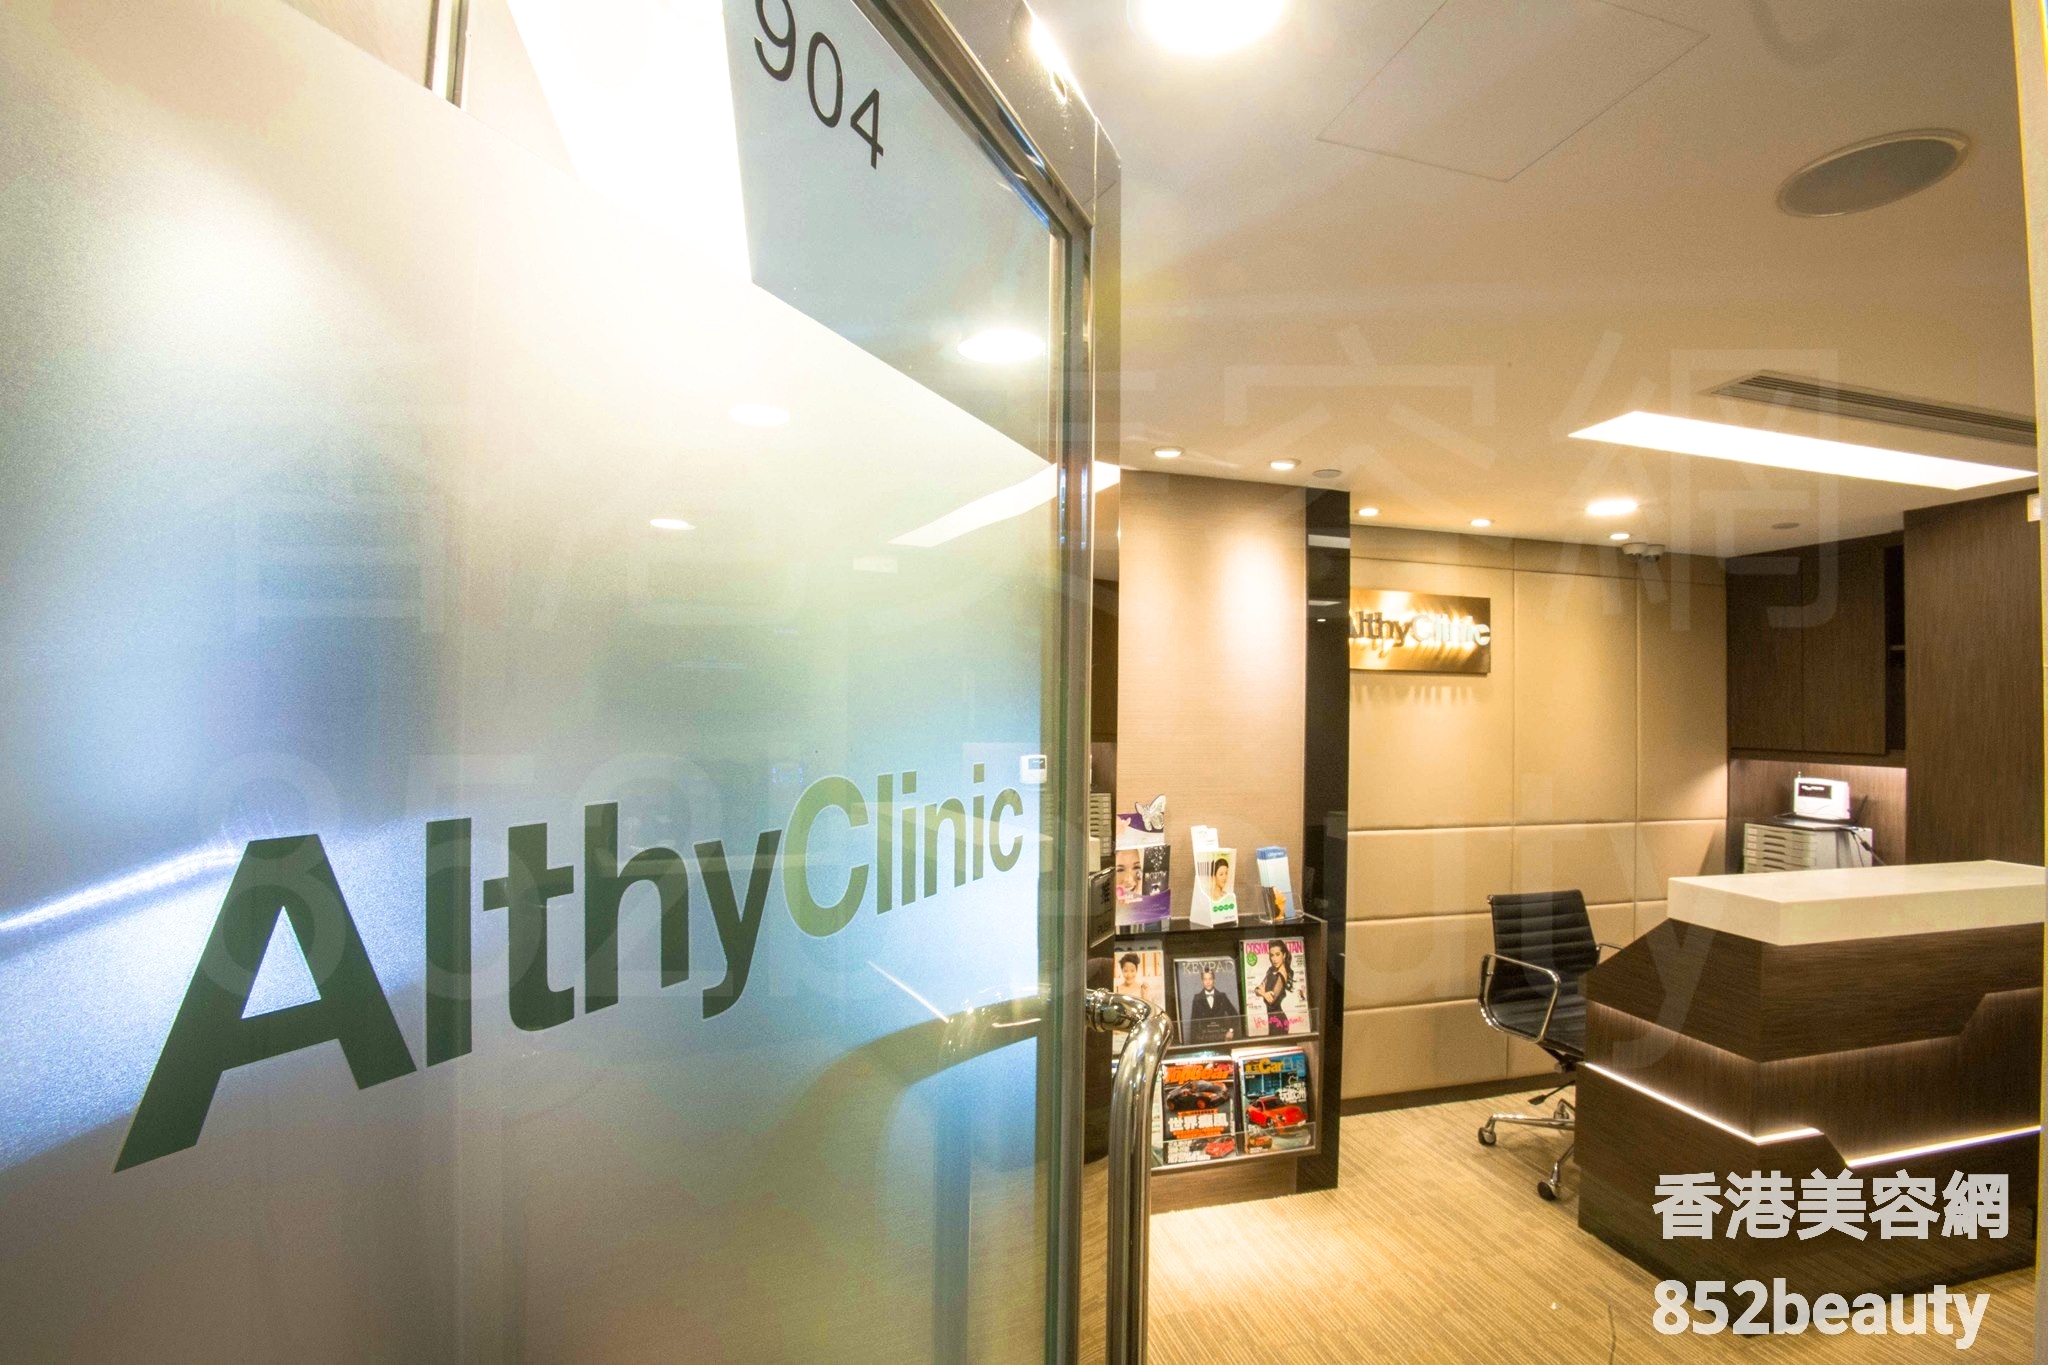 美容院: Althy Clinic